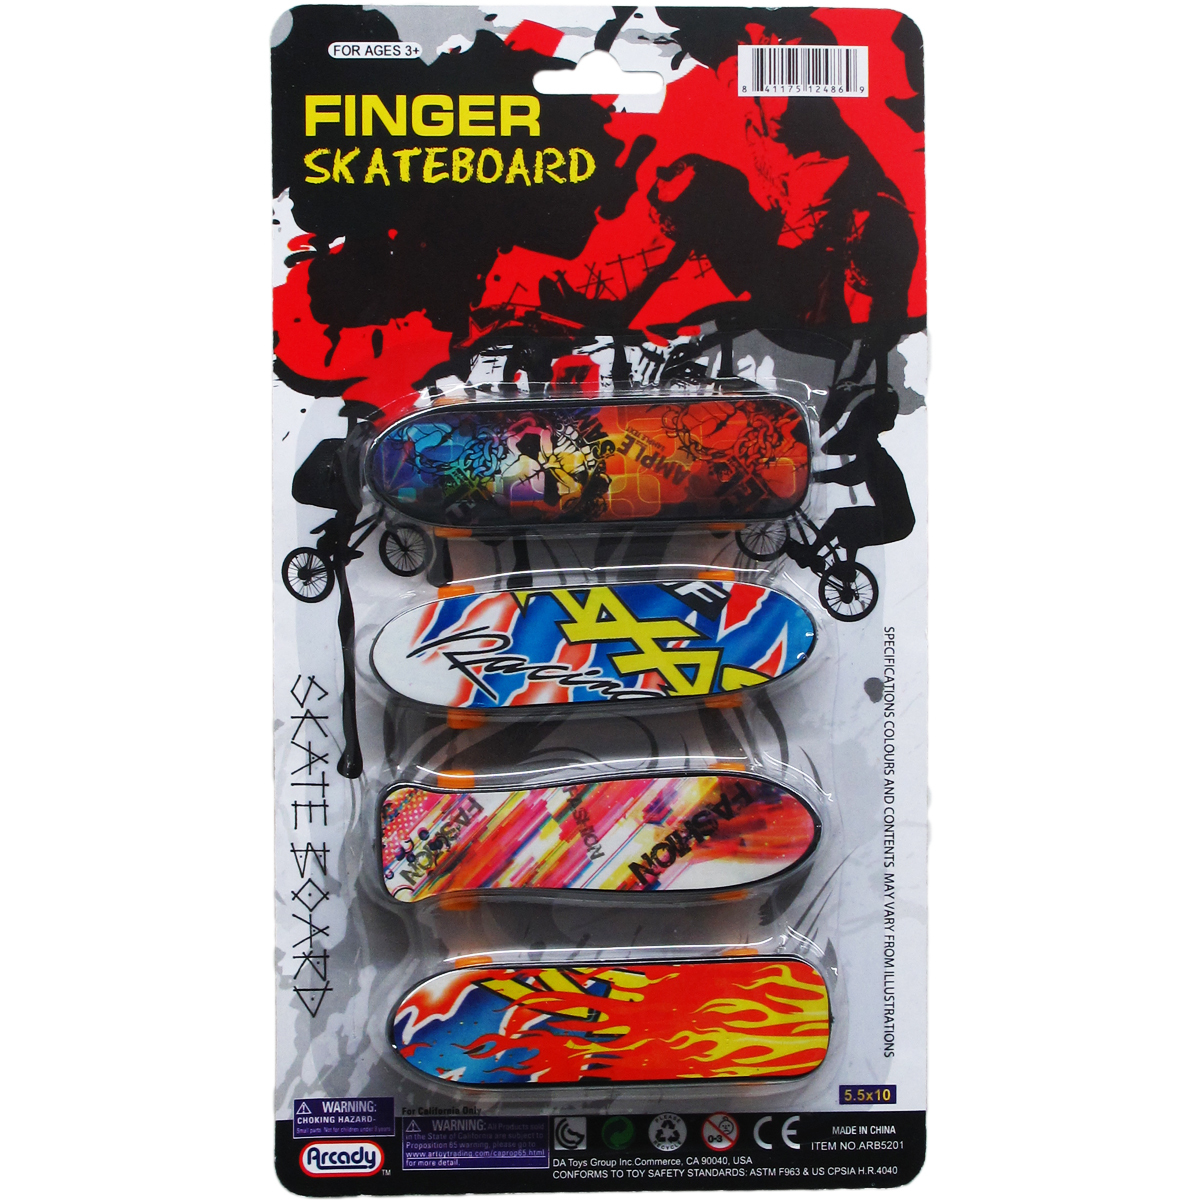 Mini Finger Skateboards - 4 Pack, Ages 3+, 3.75